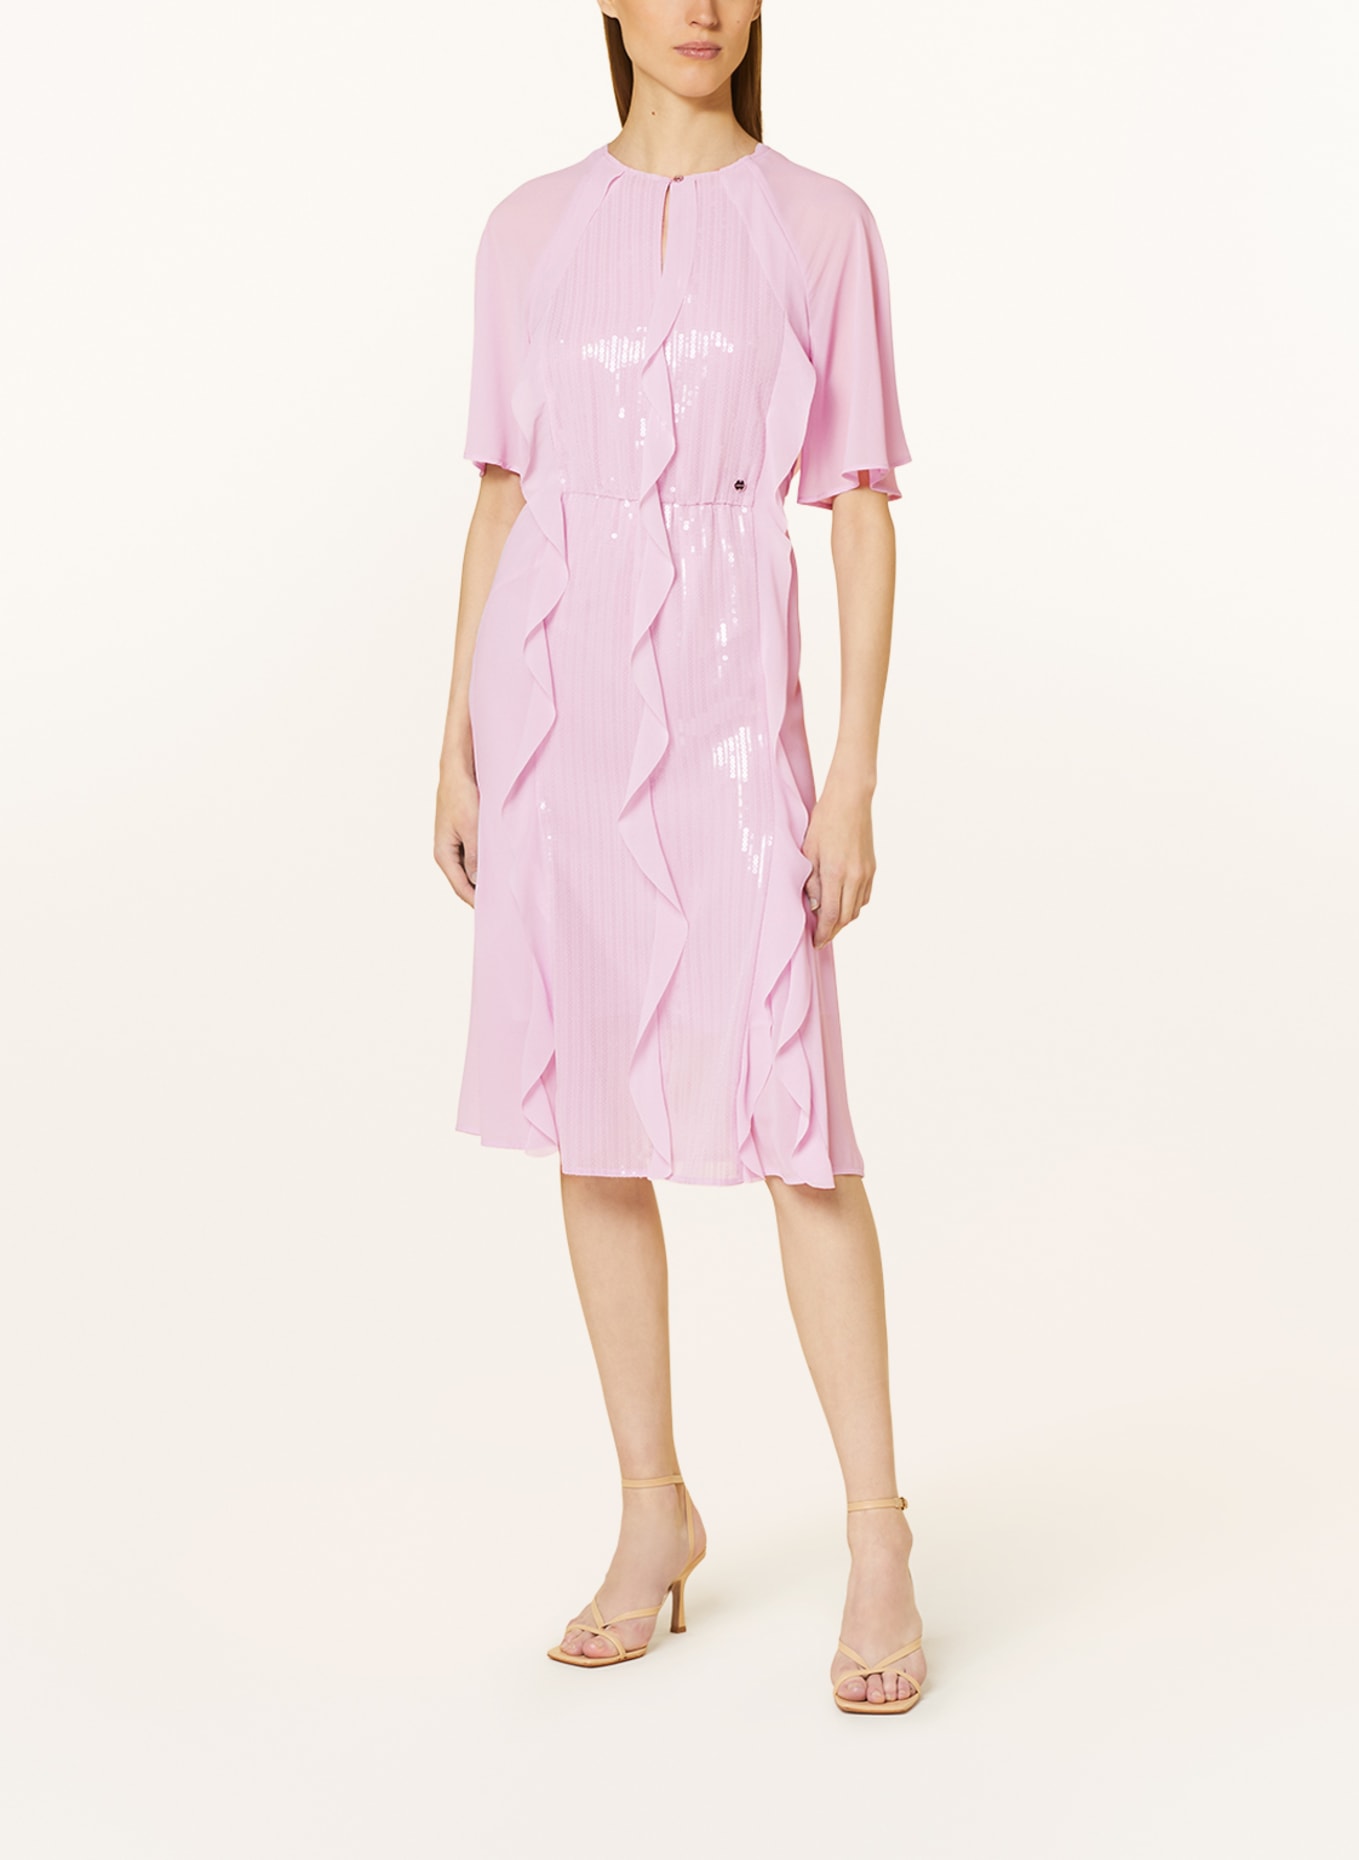 MARC CAIN Kleid mit Pailletten und Volants, Farbe: 709 pink lavender (Bild 2)